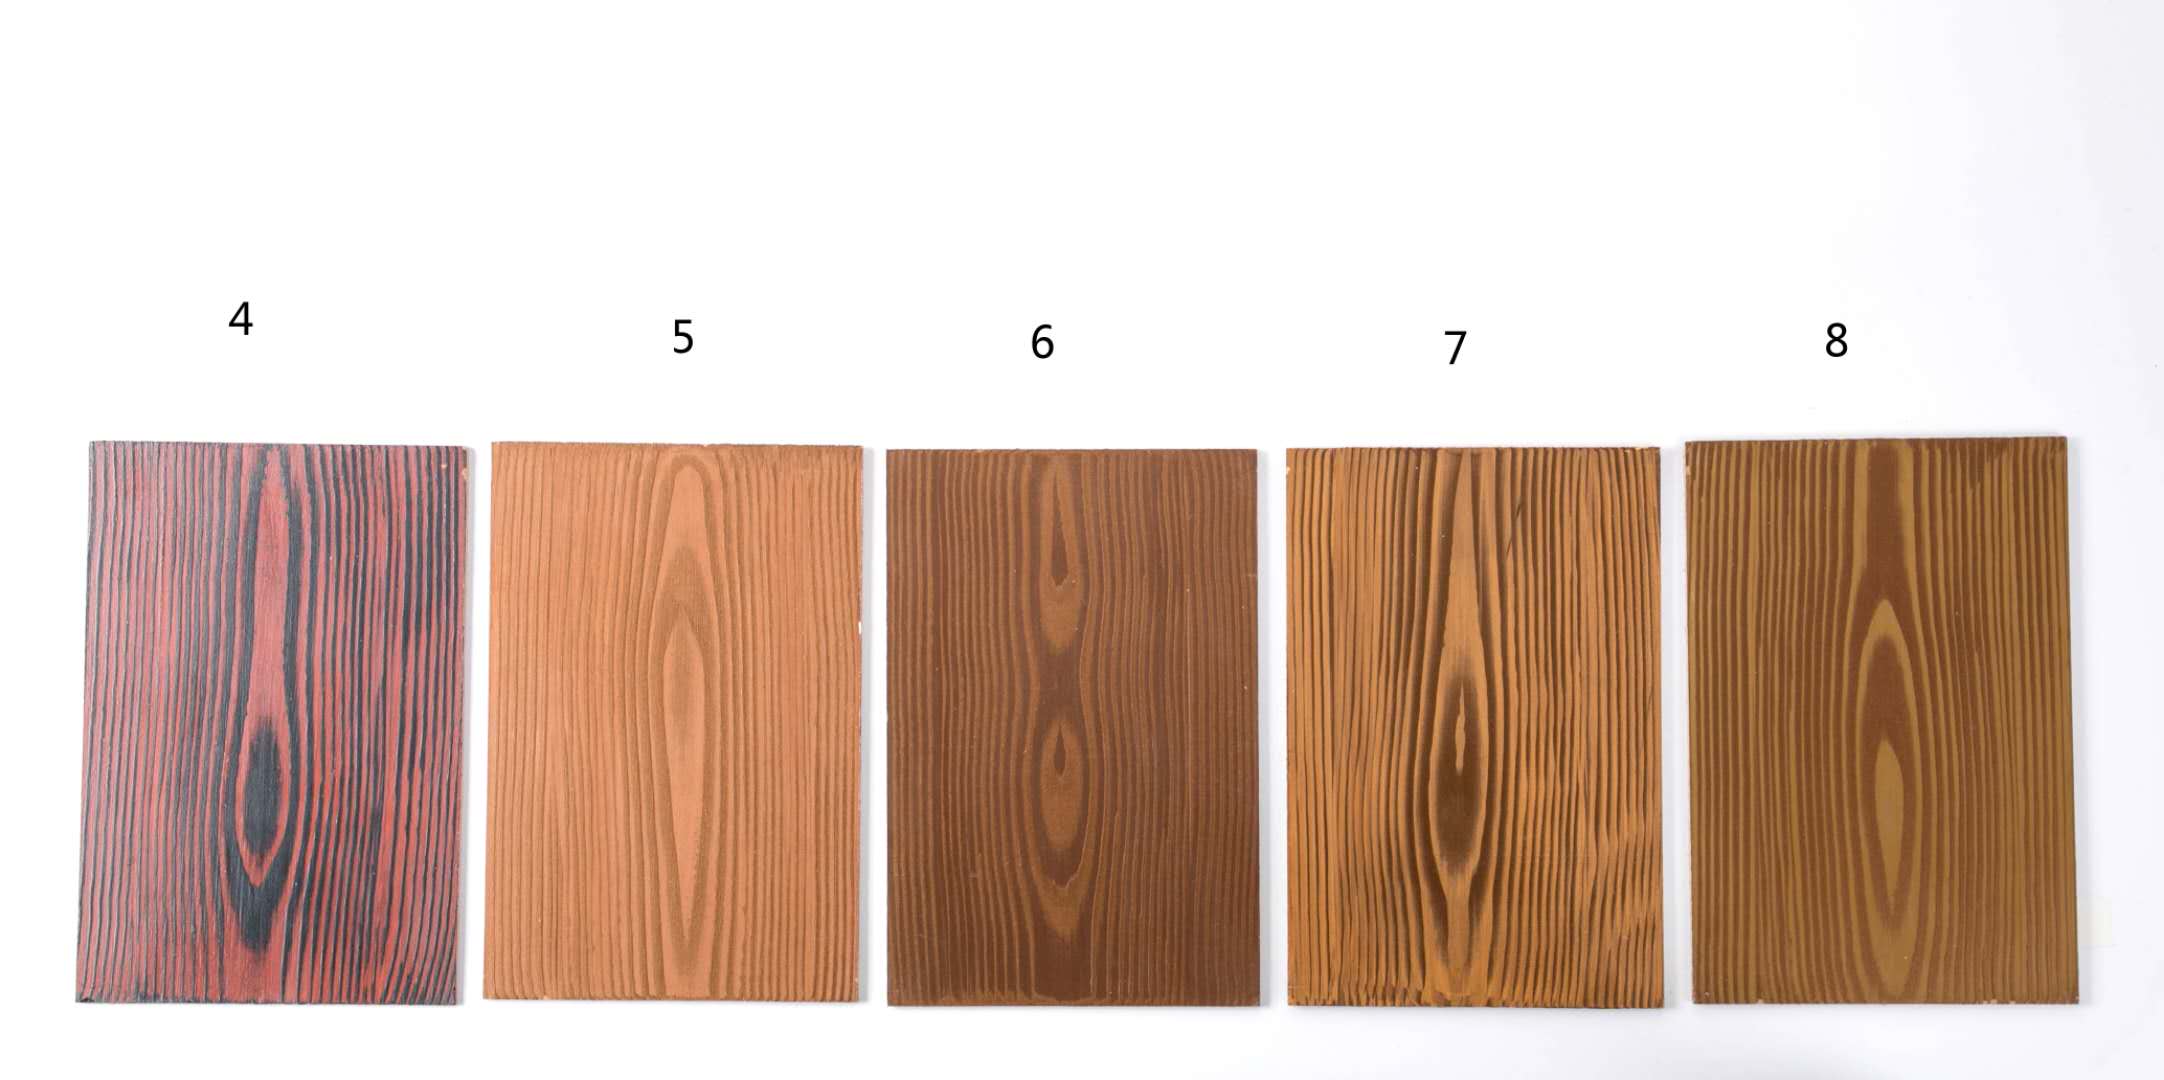 接着就是对木纹漆的木纹颜色选择,木纹漆的颜色效果是由木纹漆的底色